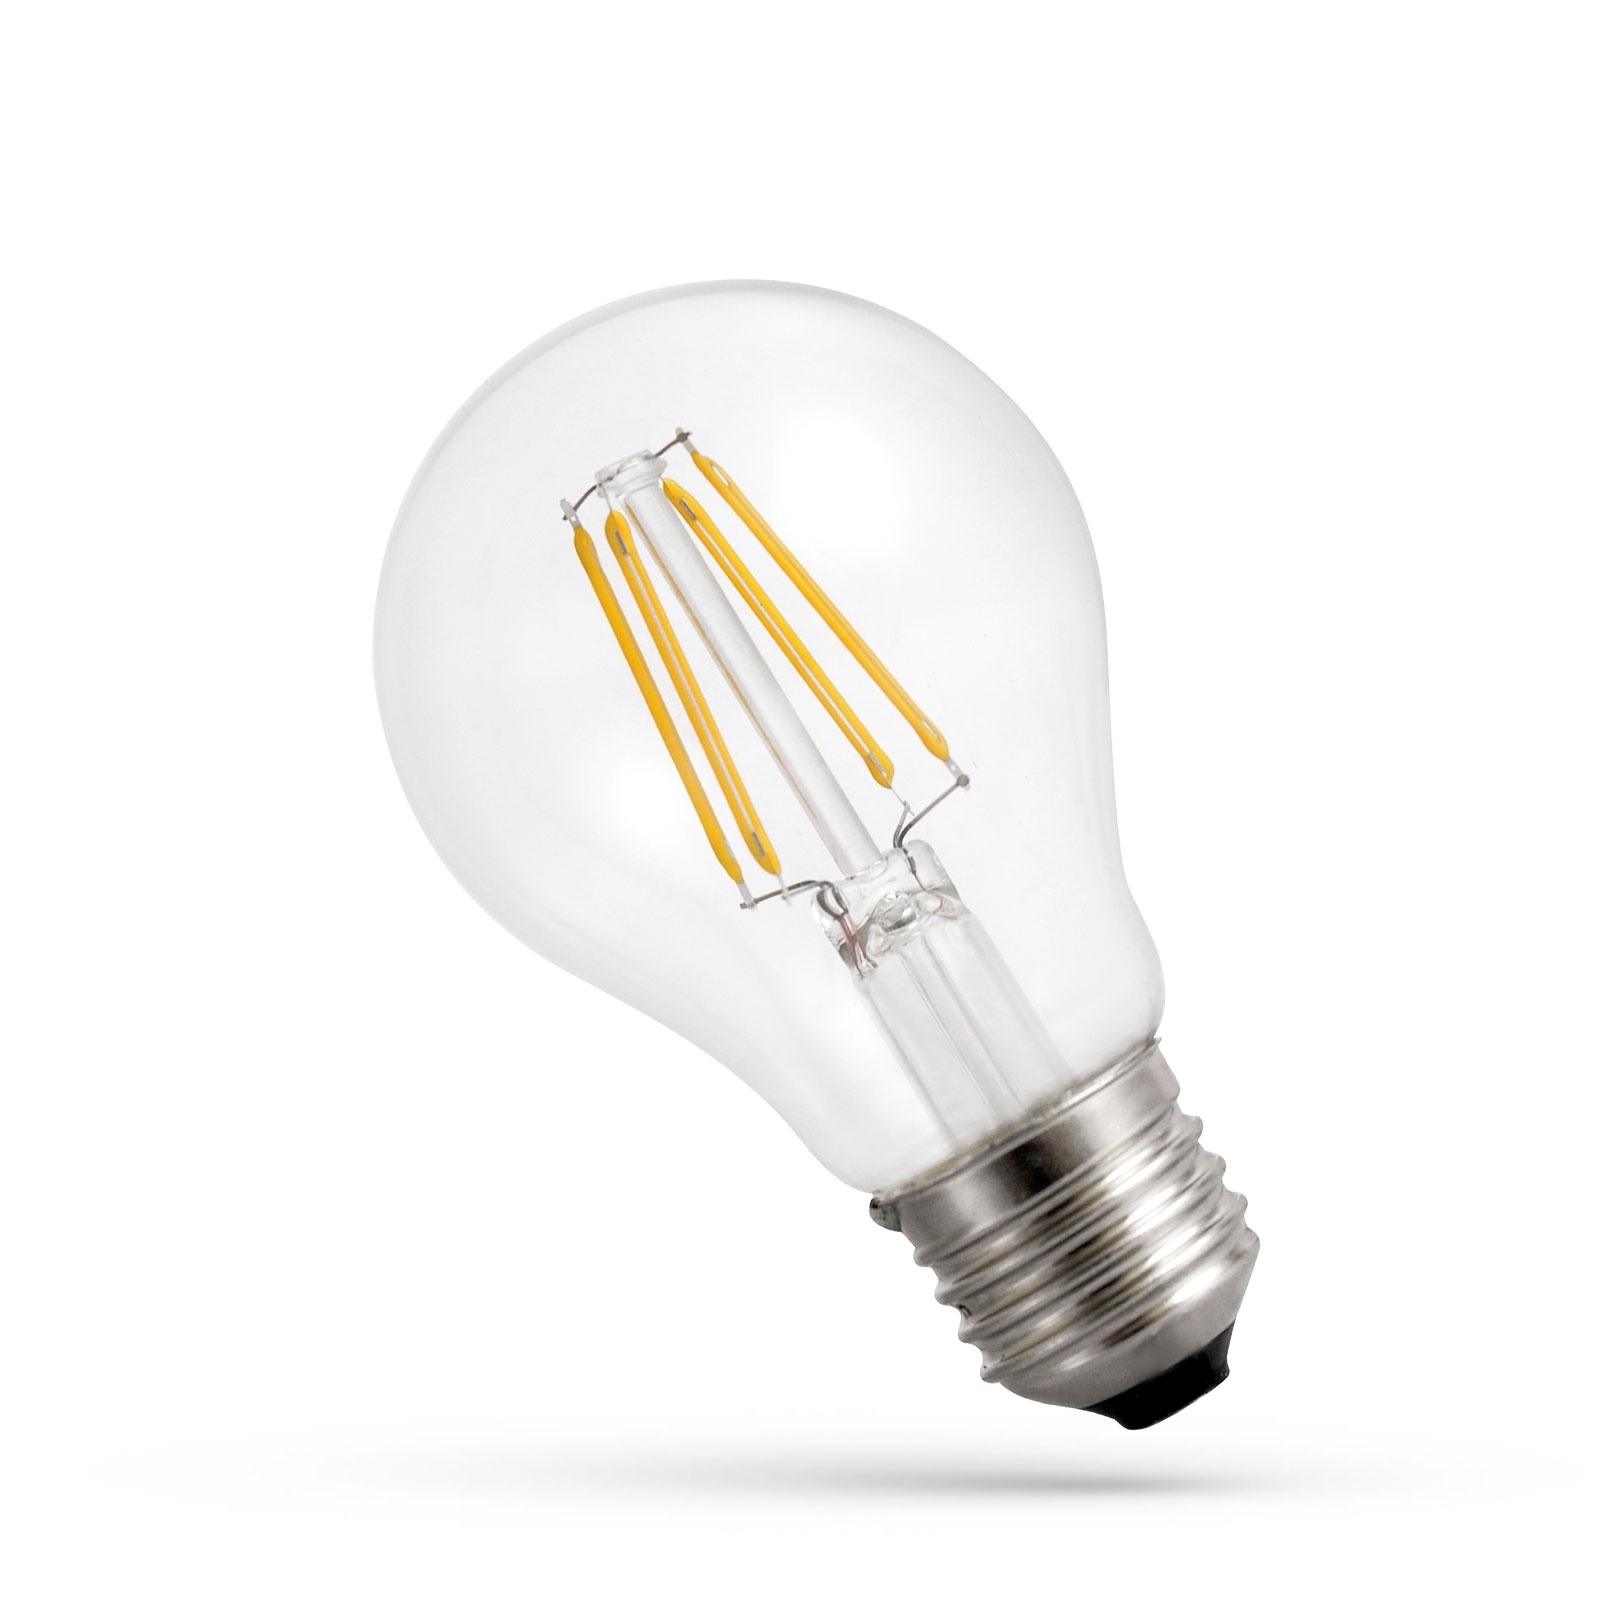 LED Filament lamp - Niet dimbaar - fitting - A60 - 6W vervangt 70W - 3000K warm wit licht - Ledpanelendiscounter.nl